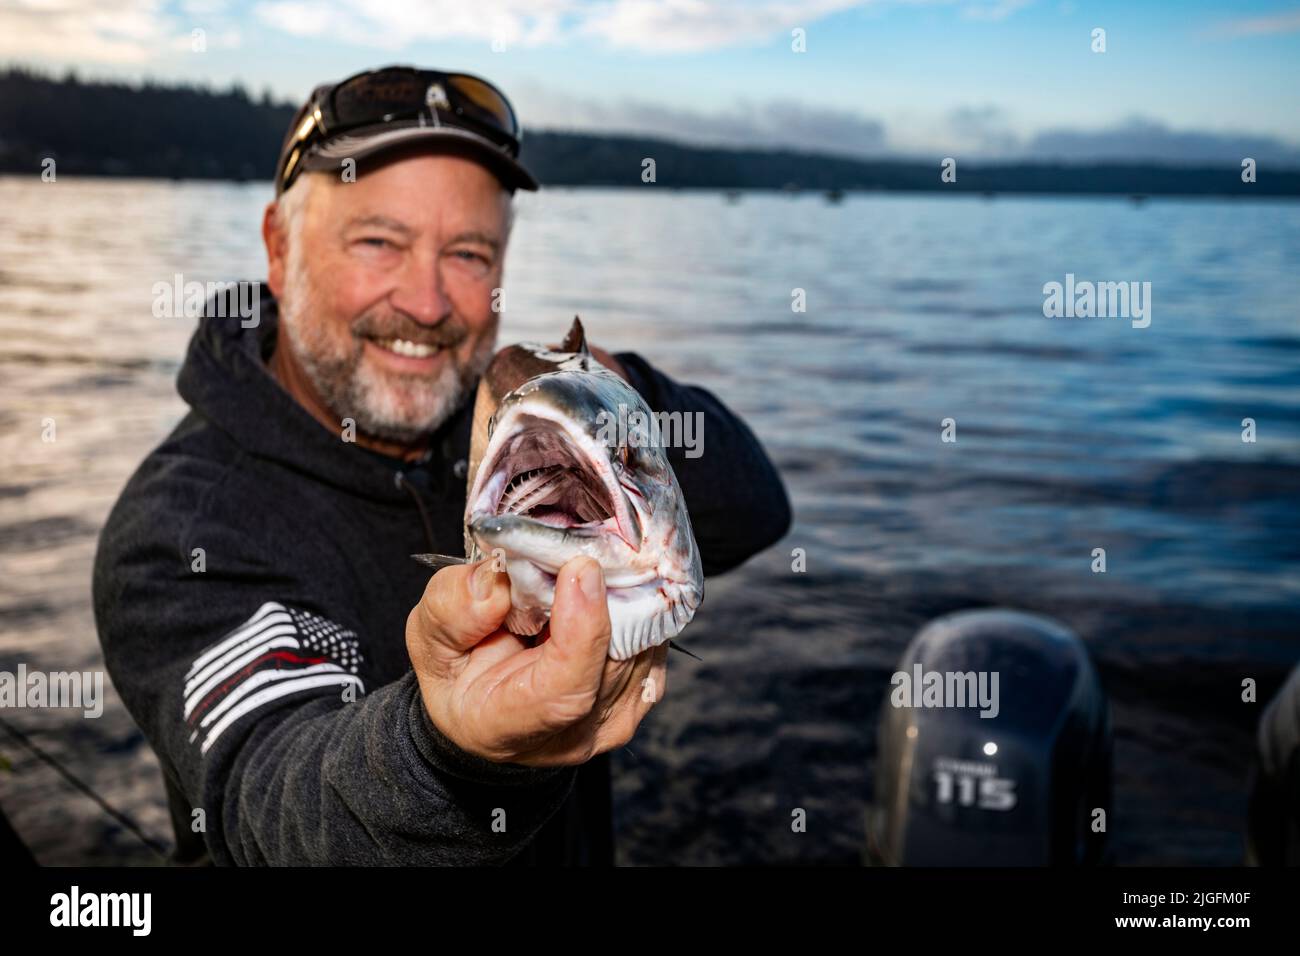 WA20631-00....WASHINGTON - Jim Johansen sostiene un salmón plateado que atrapó mientras trolling en el Puget Sound. MR J5 Foto de stock